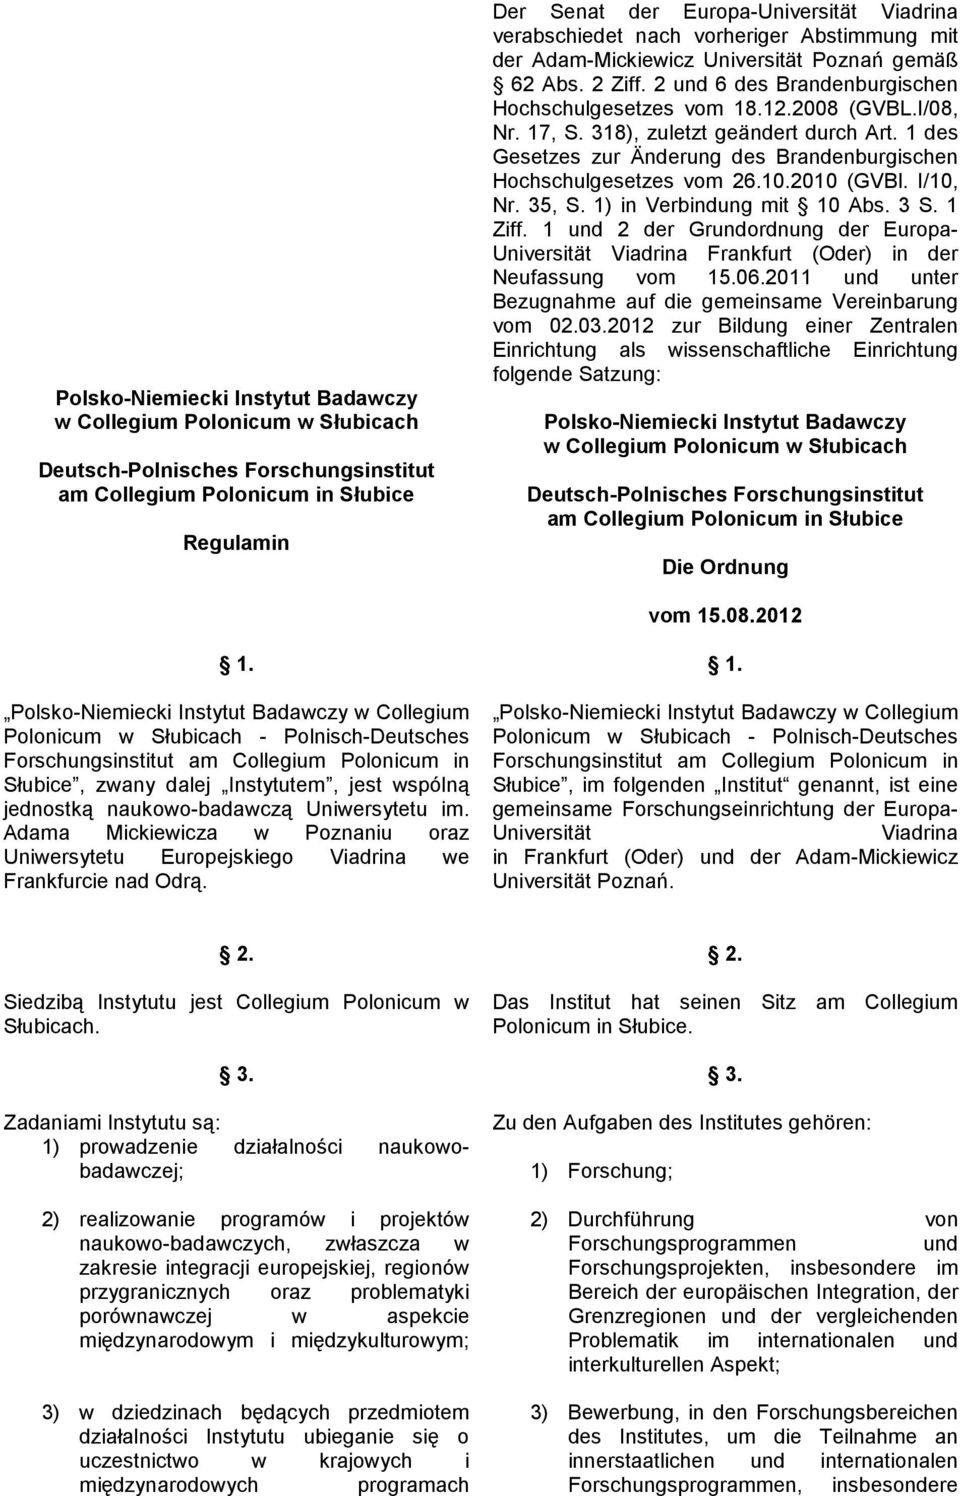 318), zuletzt geändert durch Art. 1 des Gesetzes zur Änderung des Brandenburgischen Hochschulgesetzes vom 26.10.2010 (GVBl. I/10, Nr. 35, S. 1) in Verbindung mit 10 Abs. 3 S. 1 Ziff.